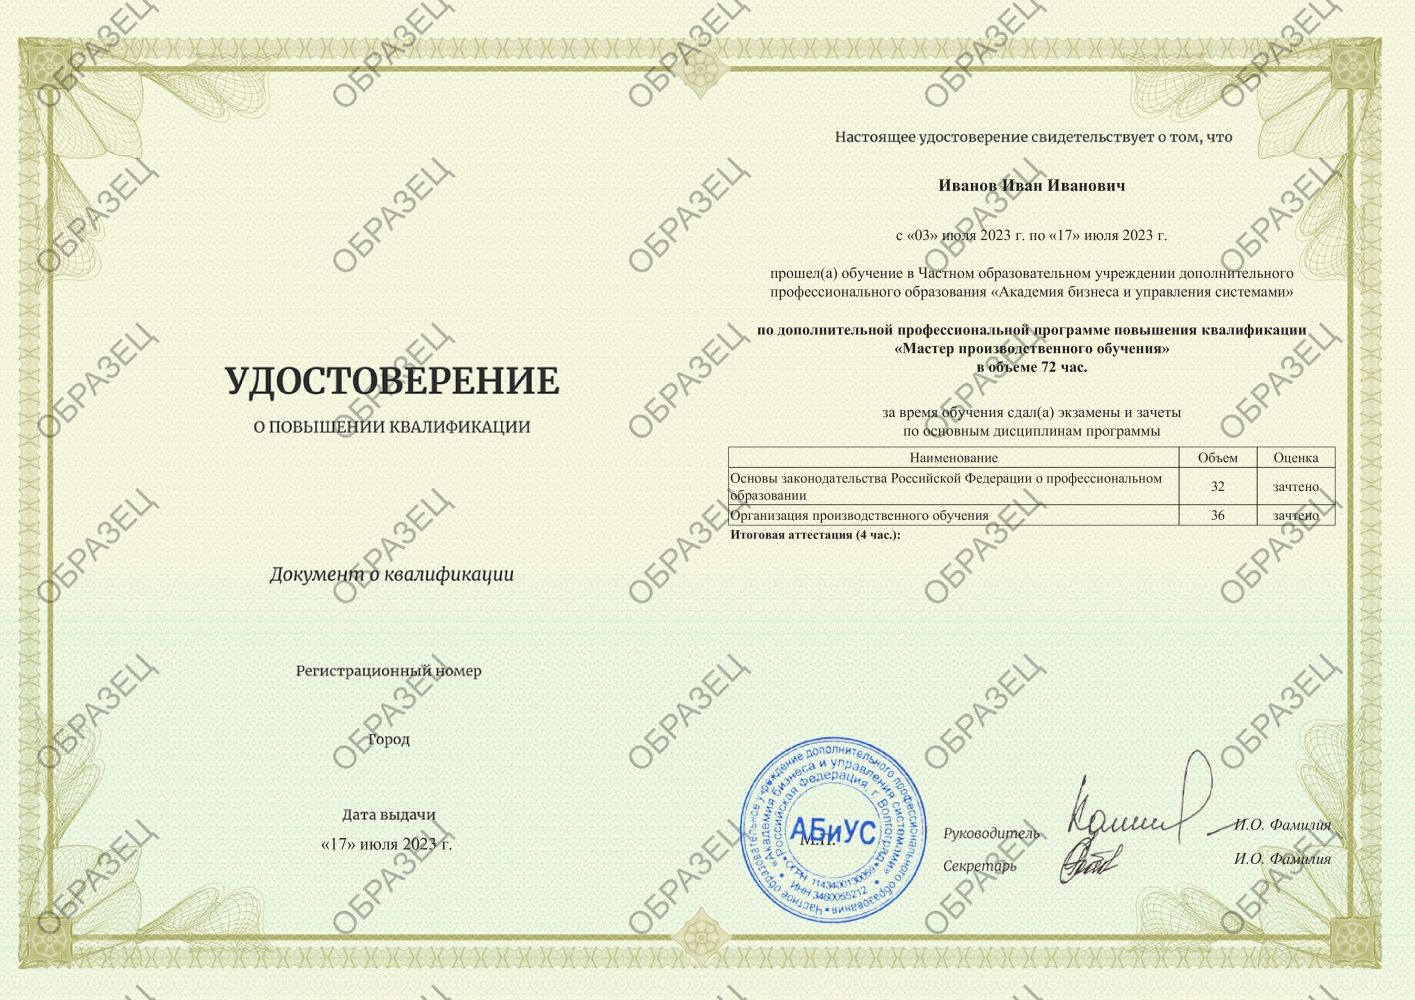 Удостоверение Мастер производственного обучения 72 часа  3438 руб.